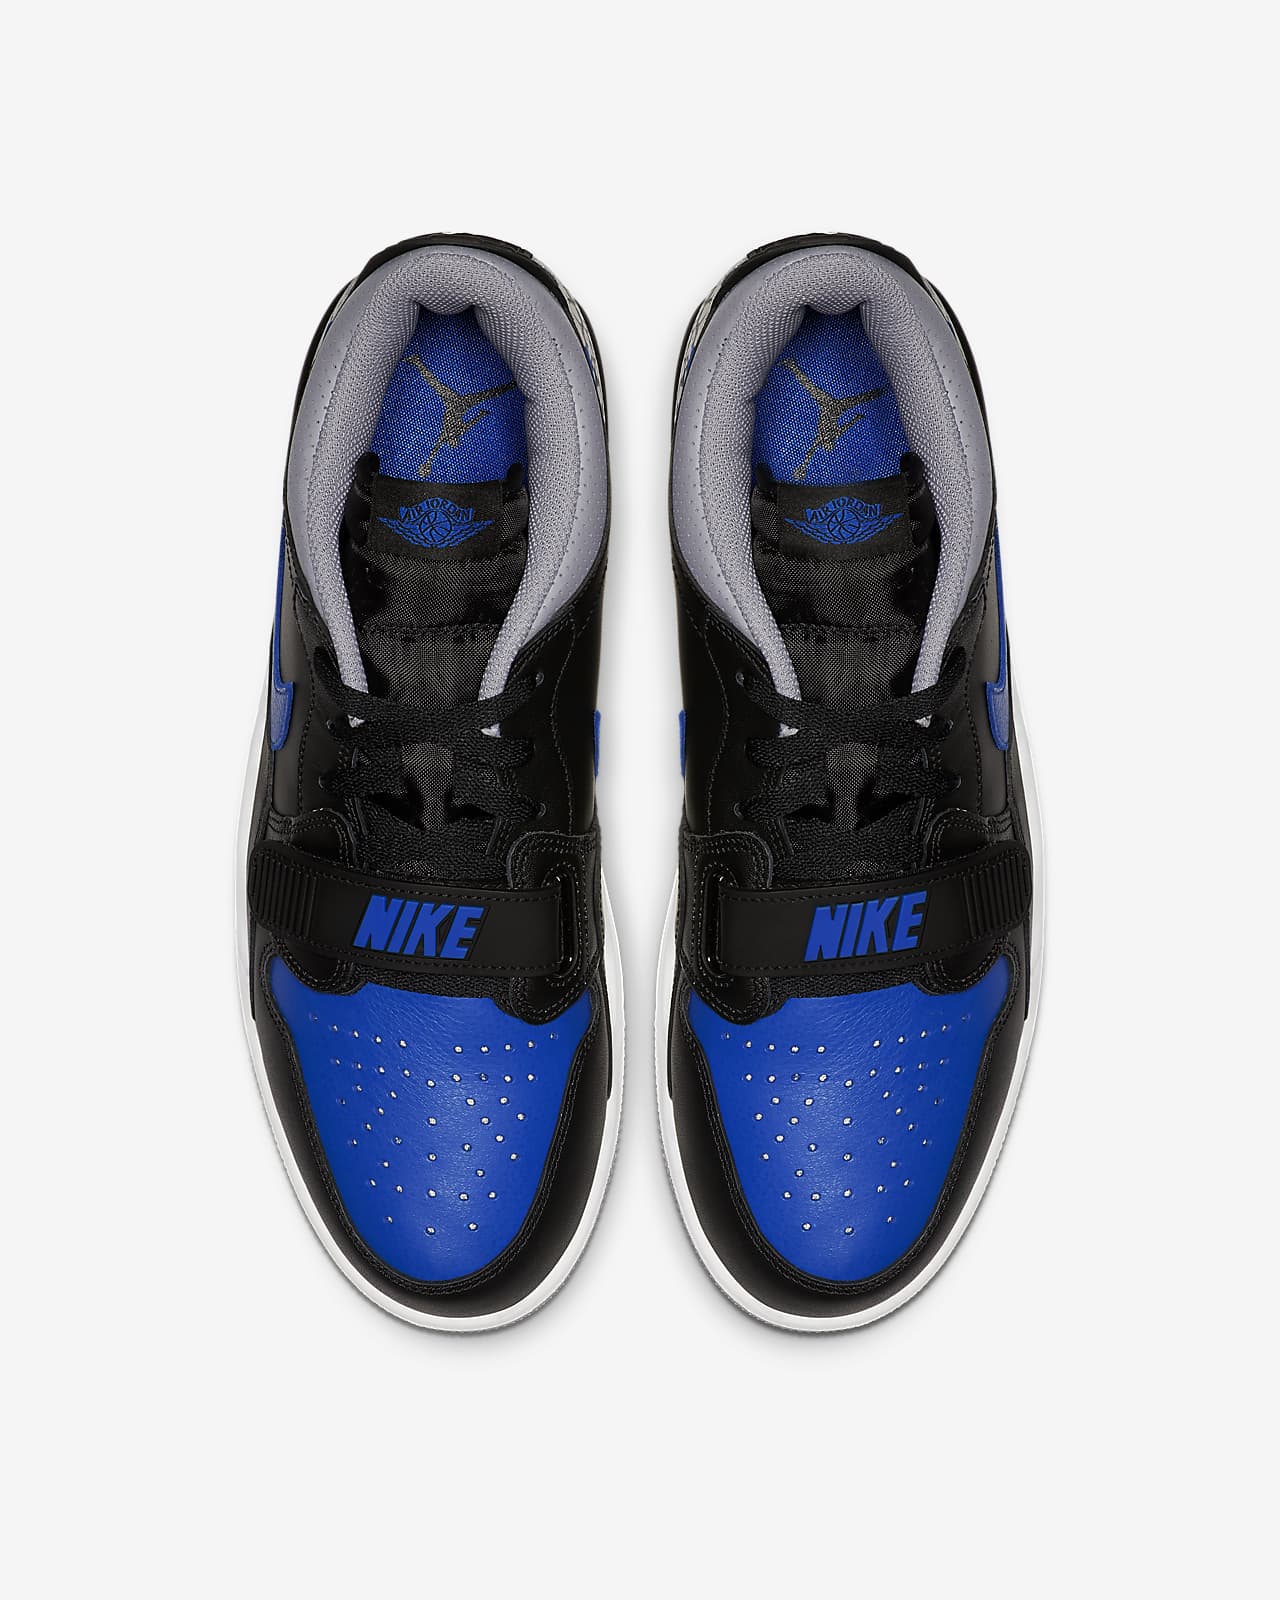 Air Jordan Legacy 312 Low Men S Shoe Nike Ph